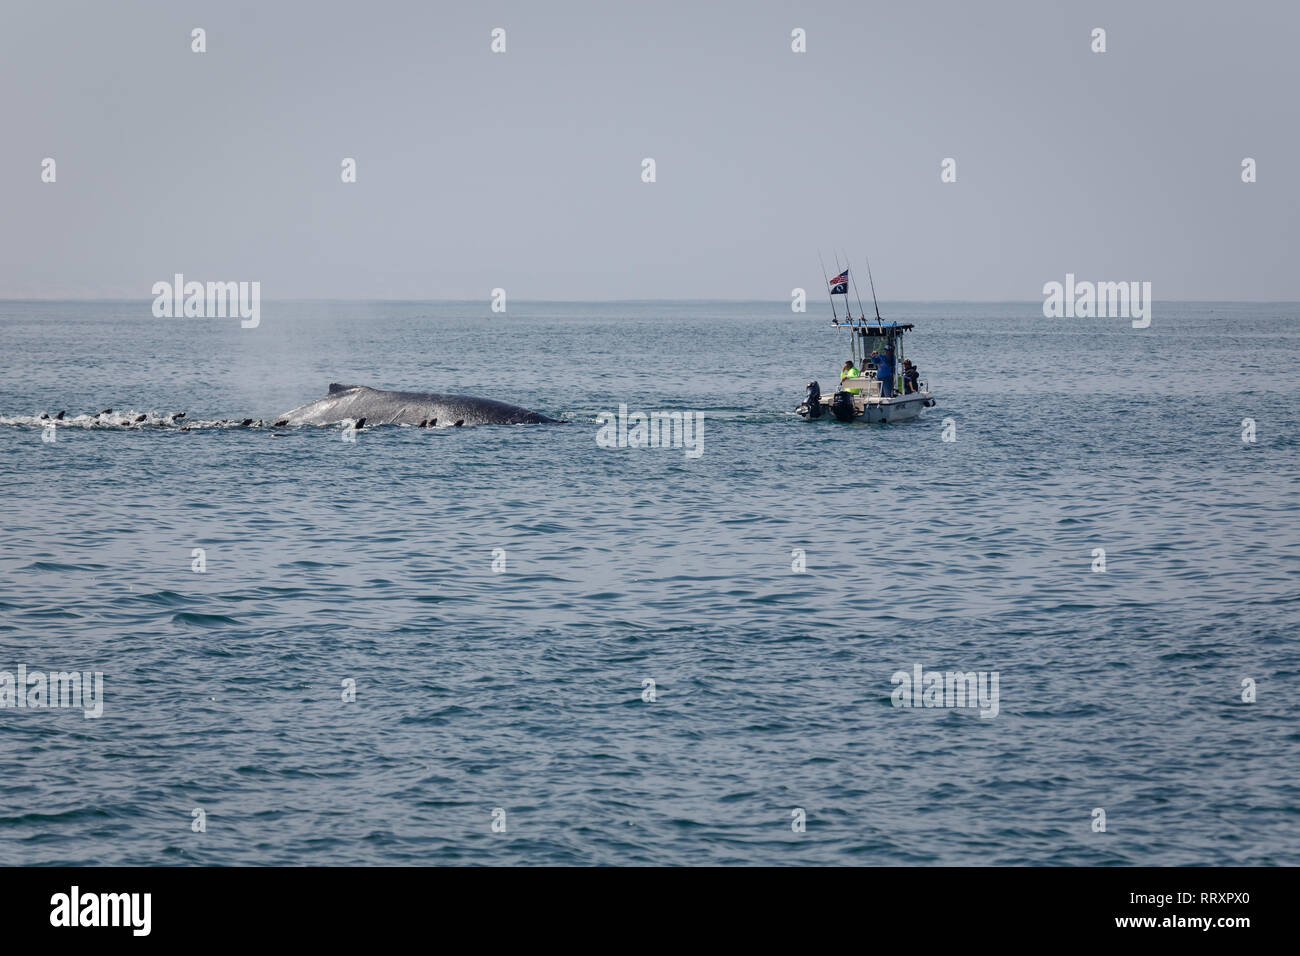 Gros plan du Whale breaching en un groupe de lions de mer avec un bateau très dangereusement près de l'énorme mammal Banque D'Images